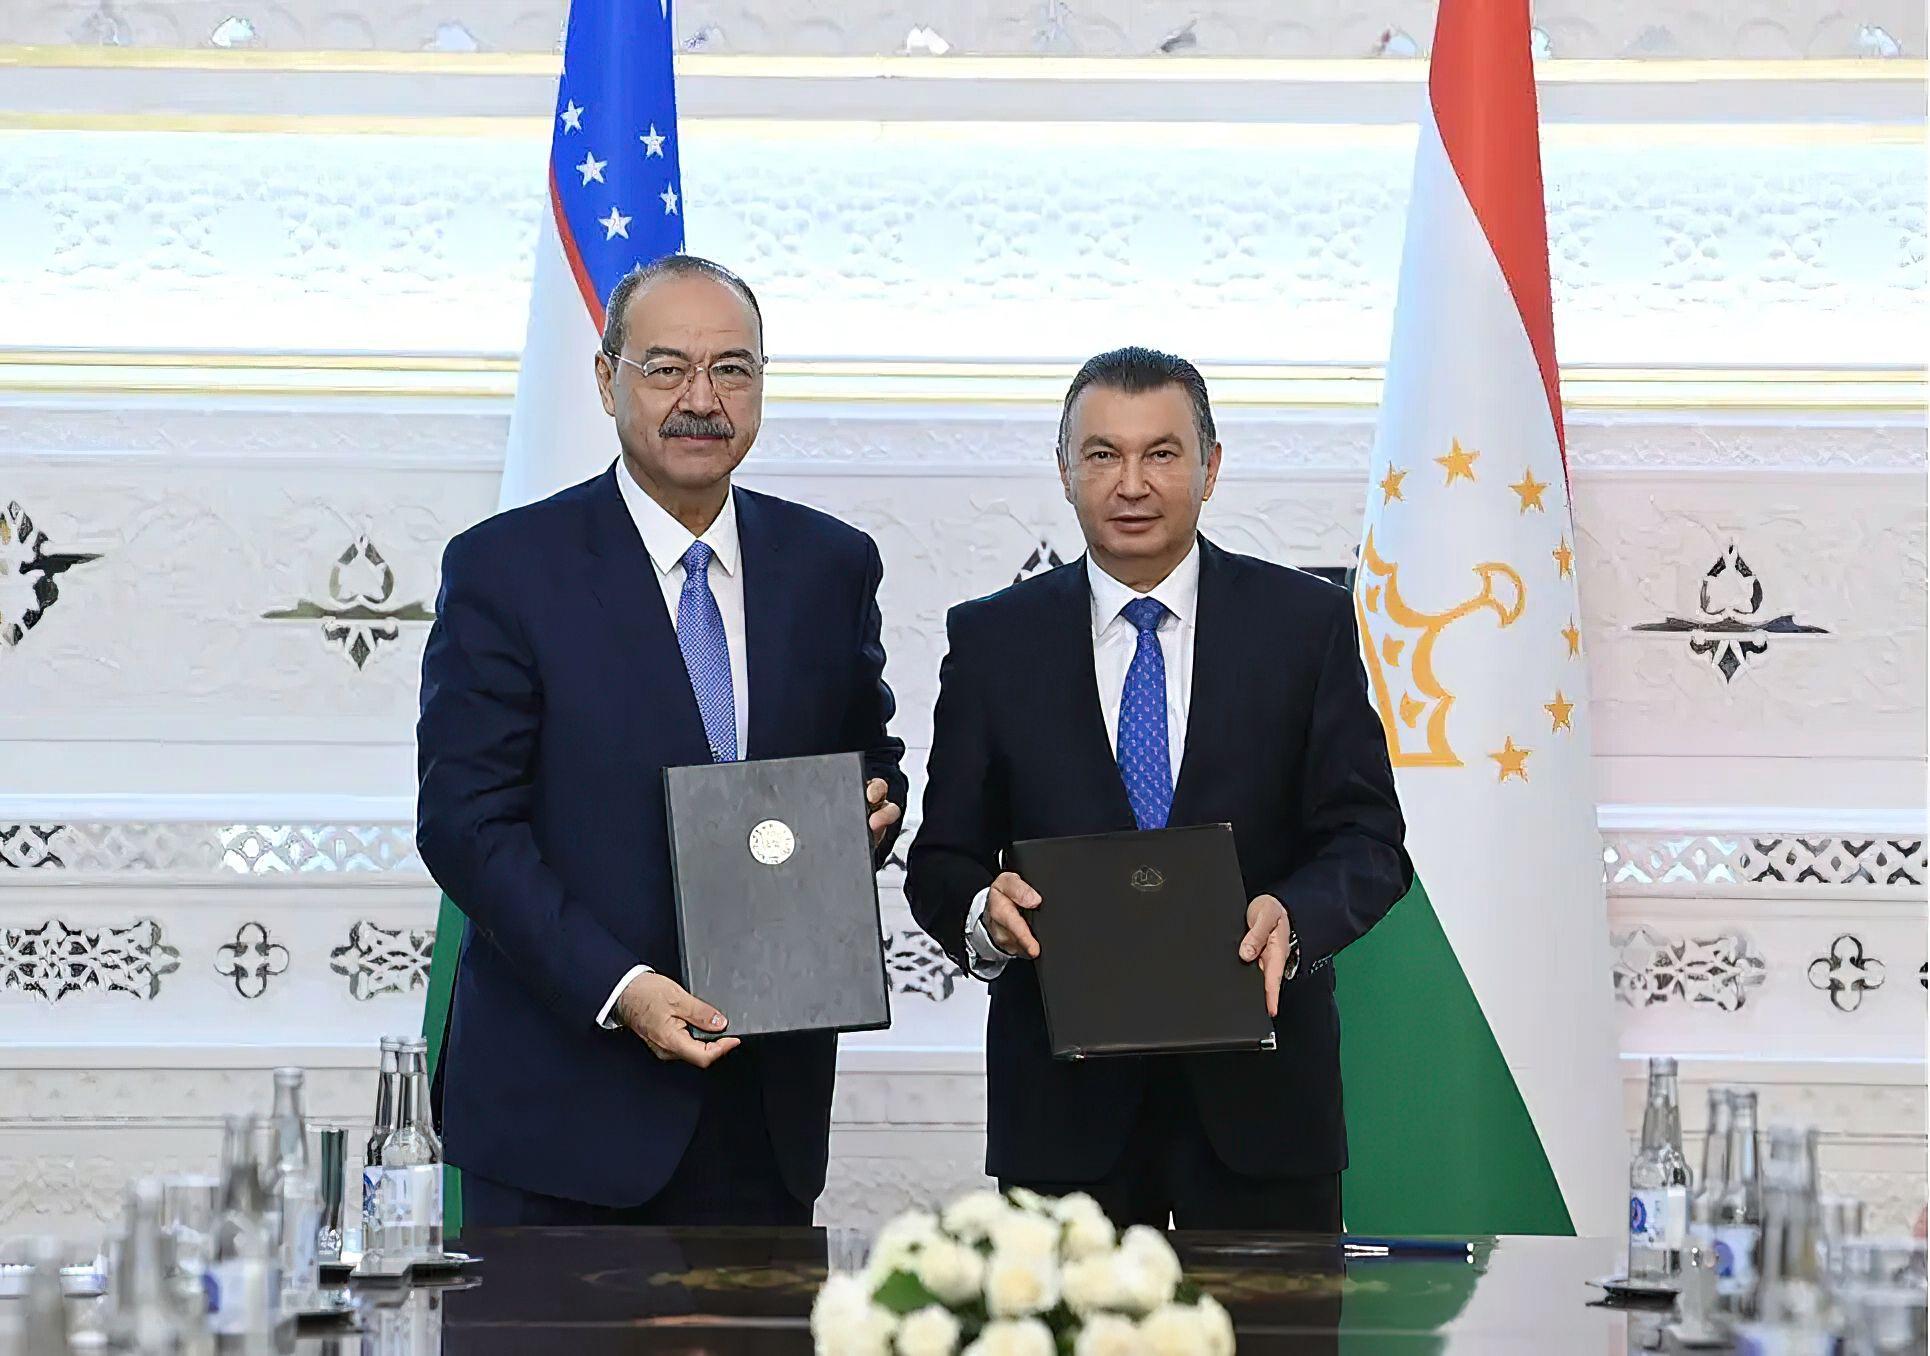 Узбекистан и Таджикистан: Укрепление торгово-экономического сотрудничества